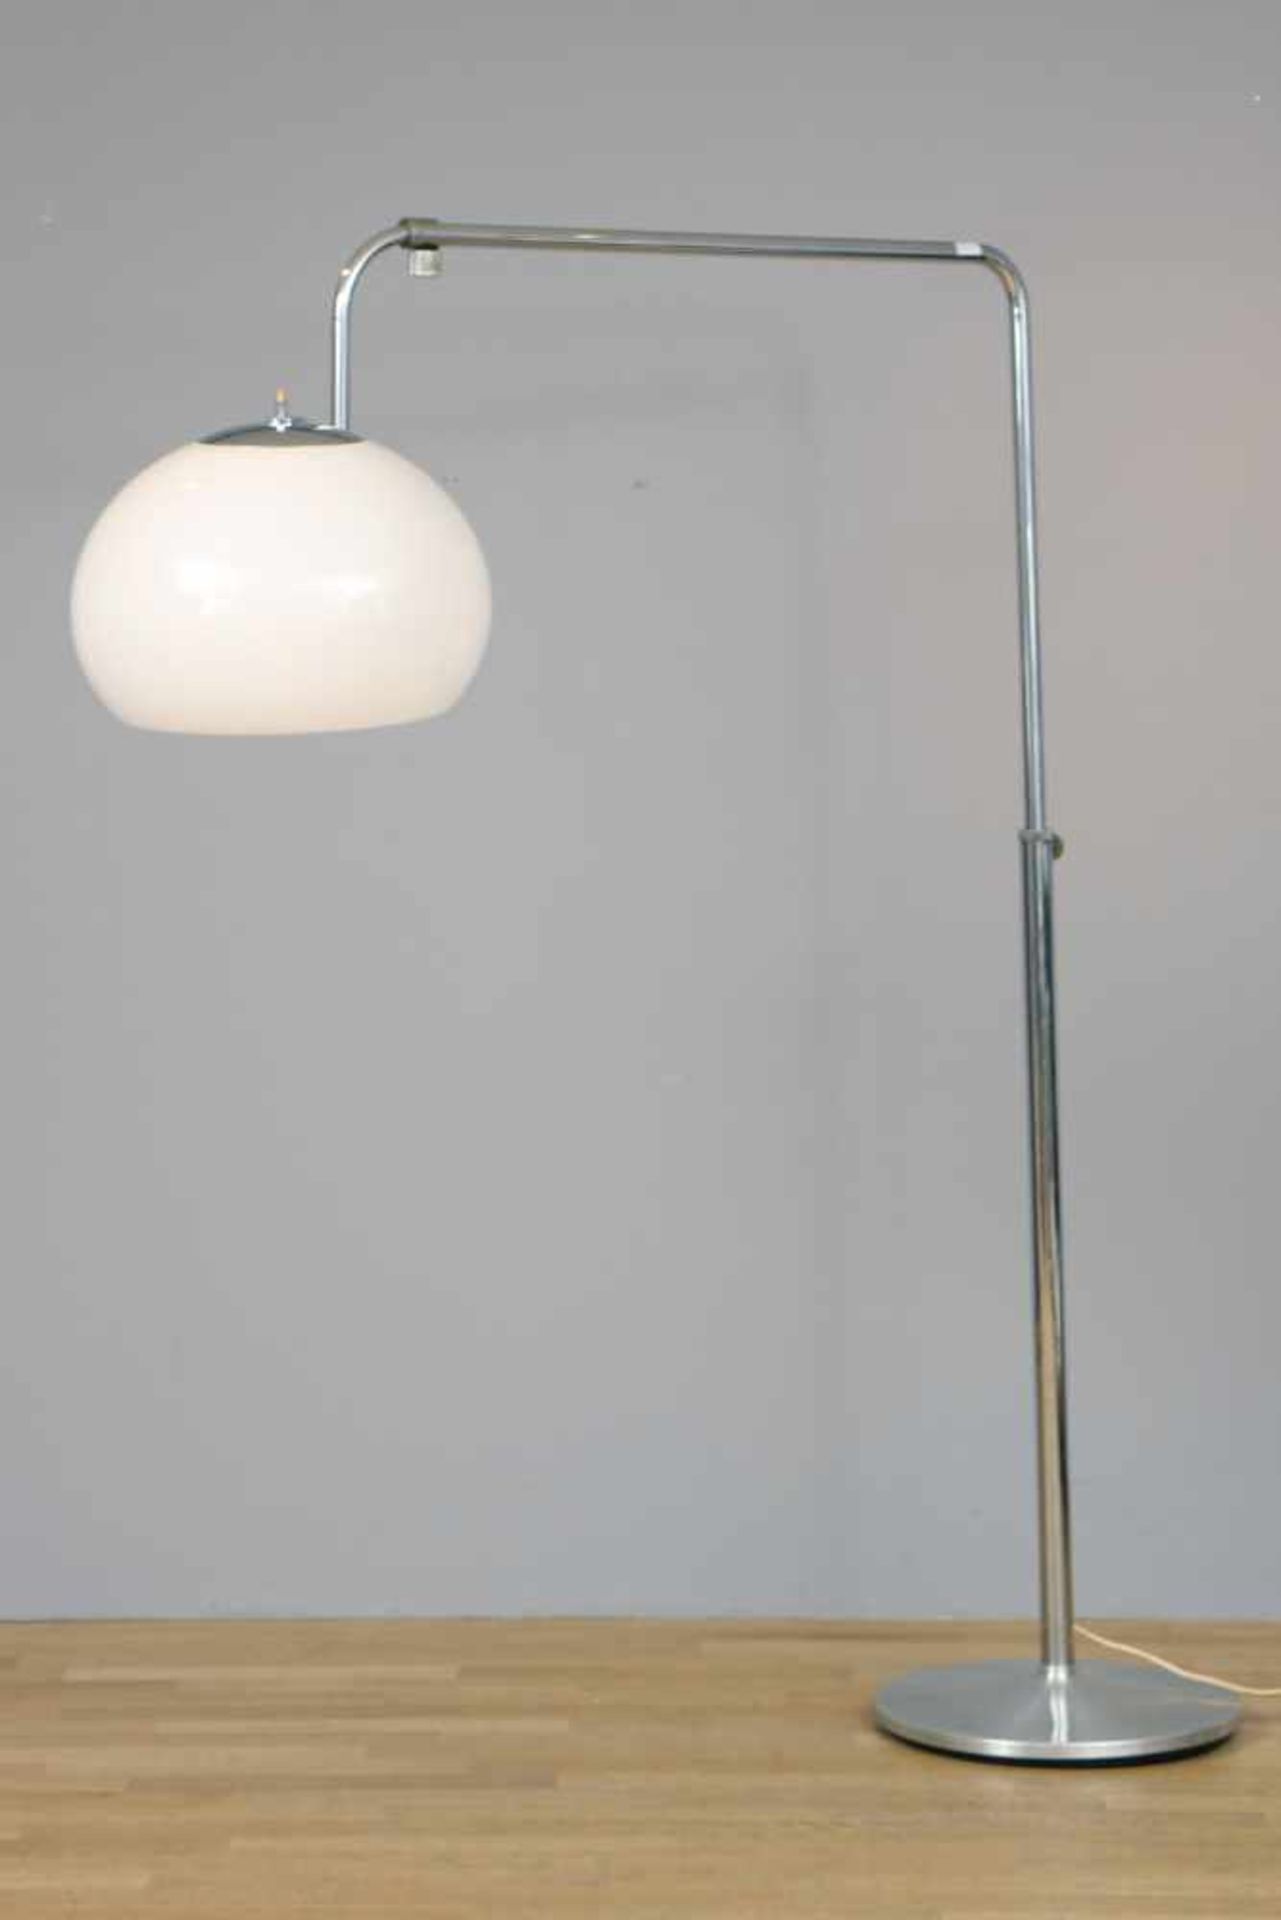 Bogenlampe der 1970er Jahreverchromtes Stahlrohr, schlankes, höhenverstellbares Gestänge,